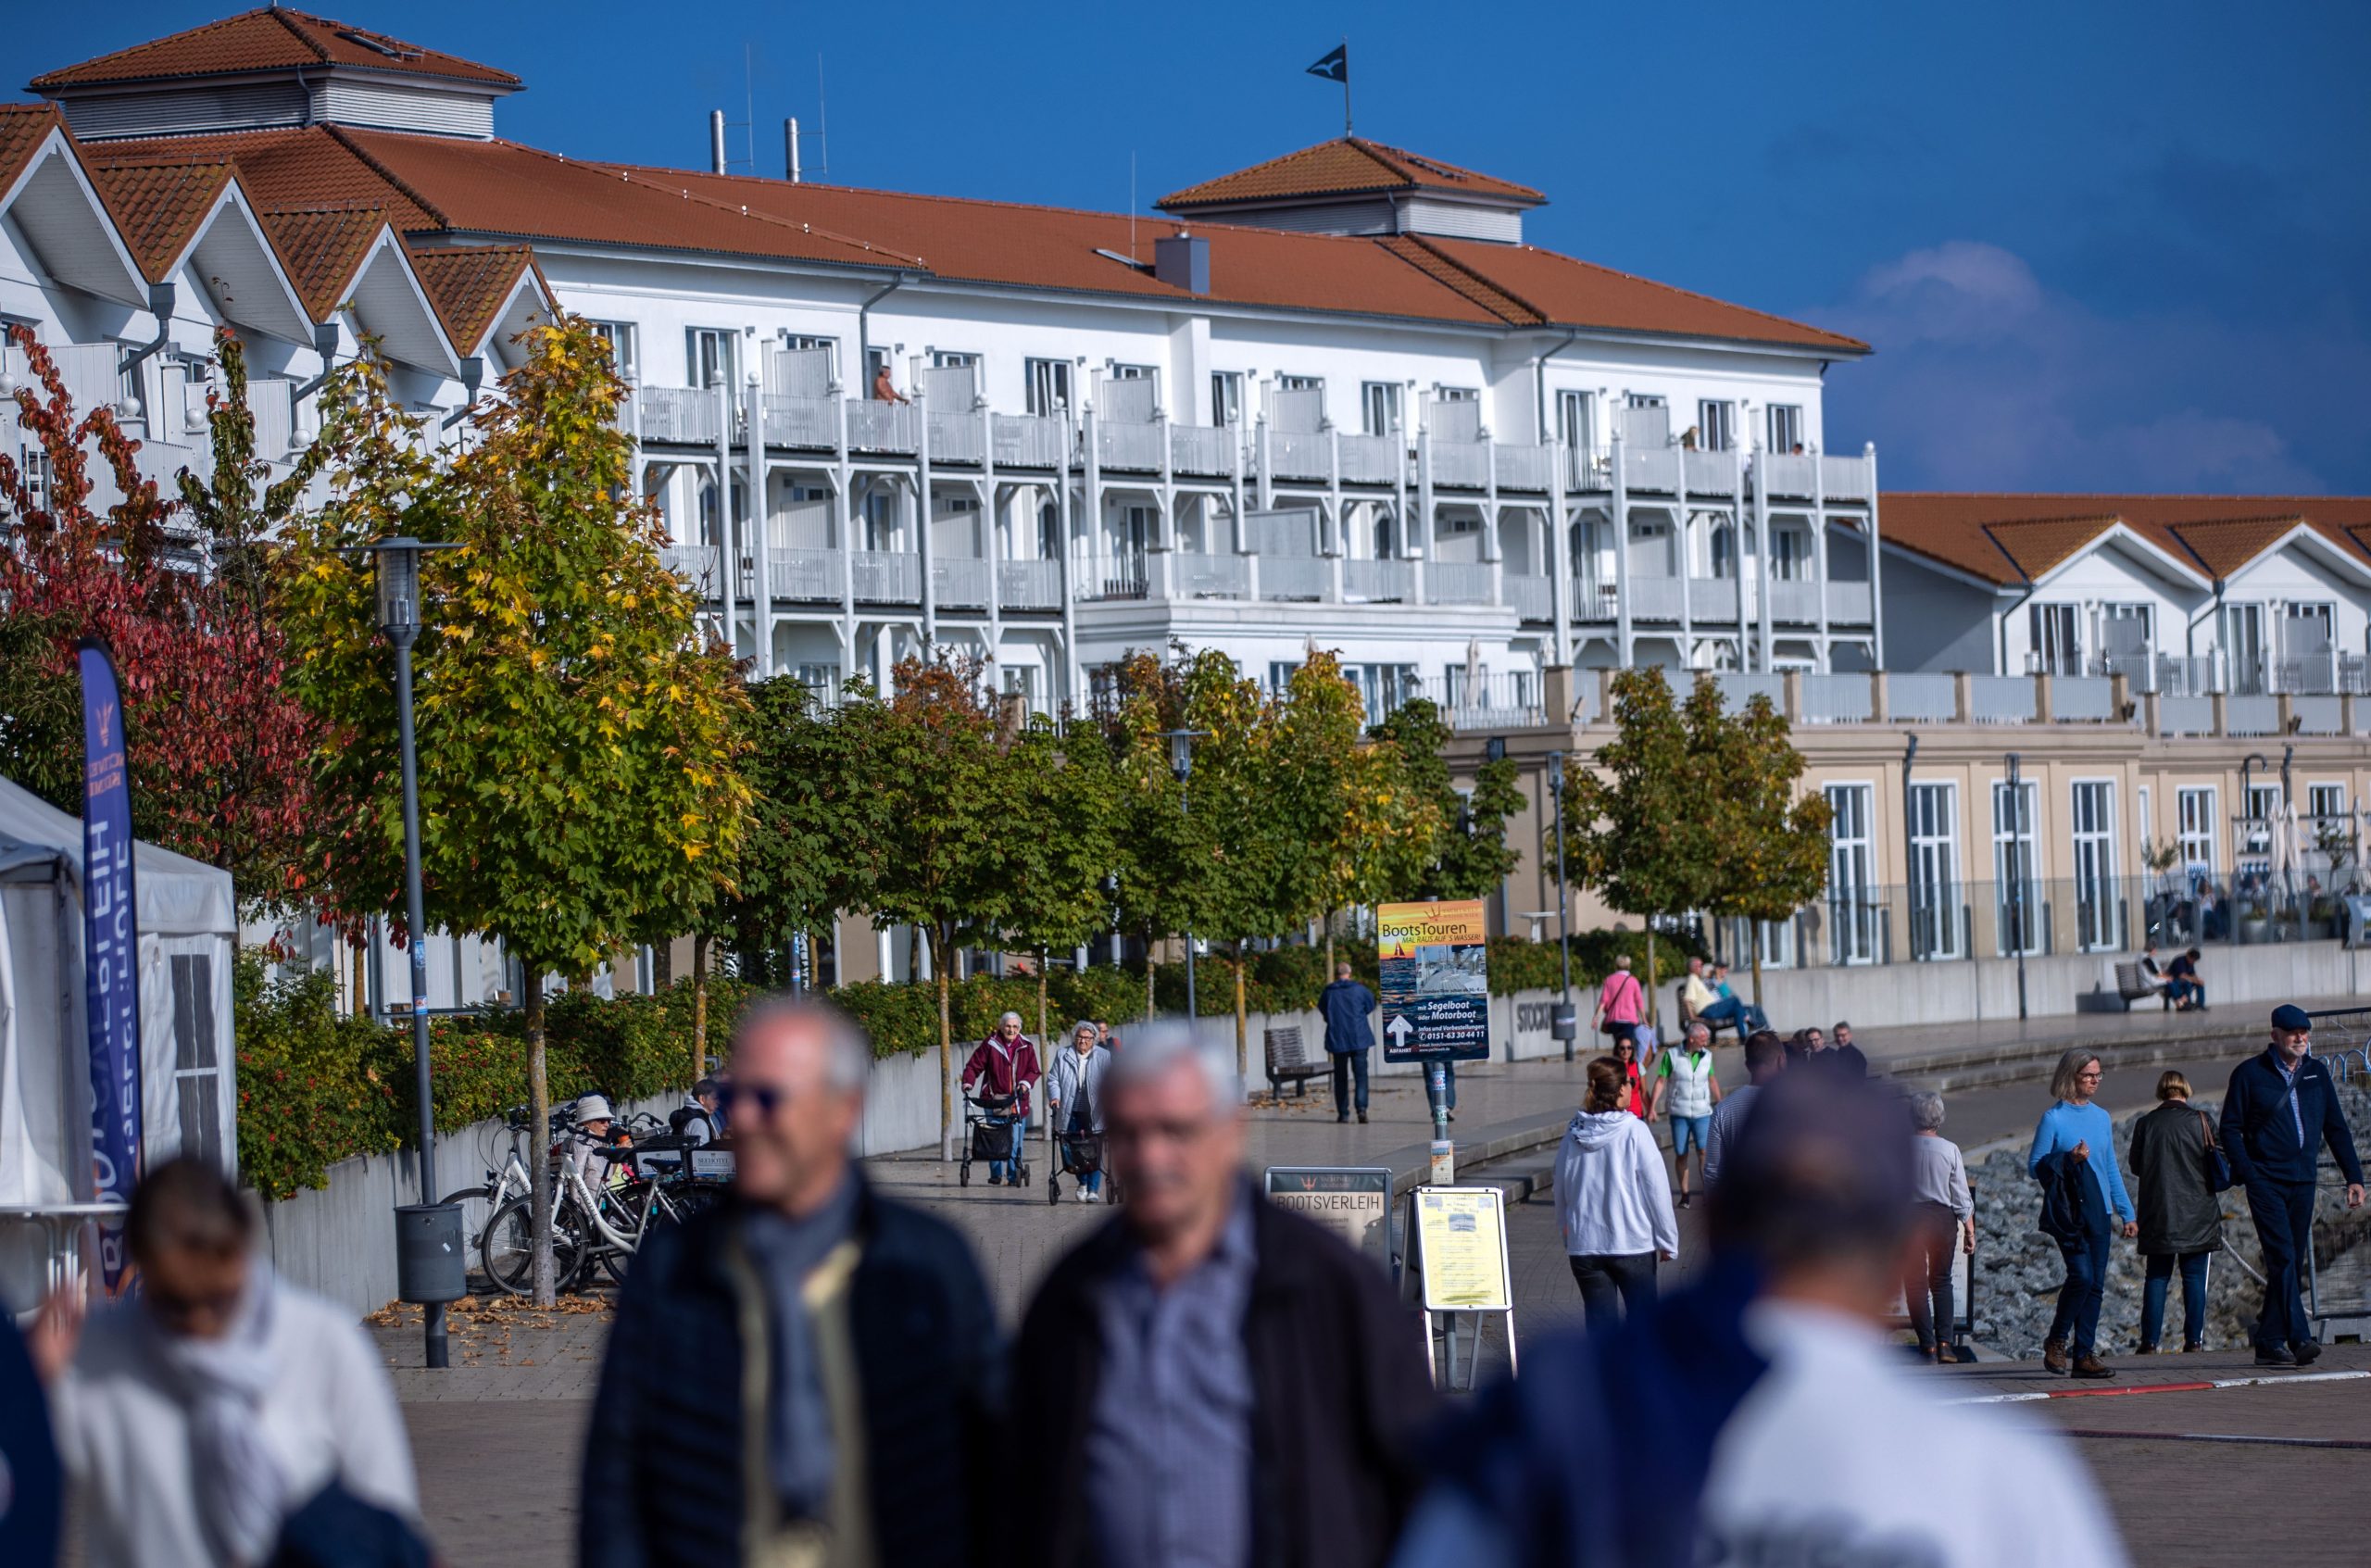 Touristen in Mecklenburg Vorpommern - hier wird positiv auf die Herbstsaison geblickt, denn die Tourismusbranche will die Corona-bedingten Ausfälle aus dem Frühjahr aufholen.